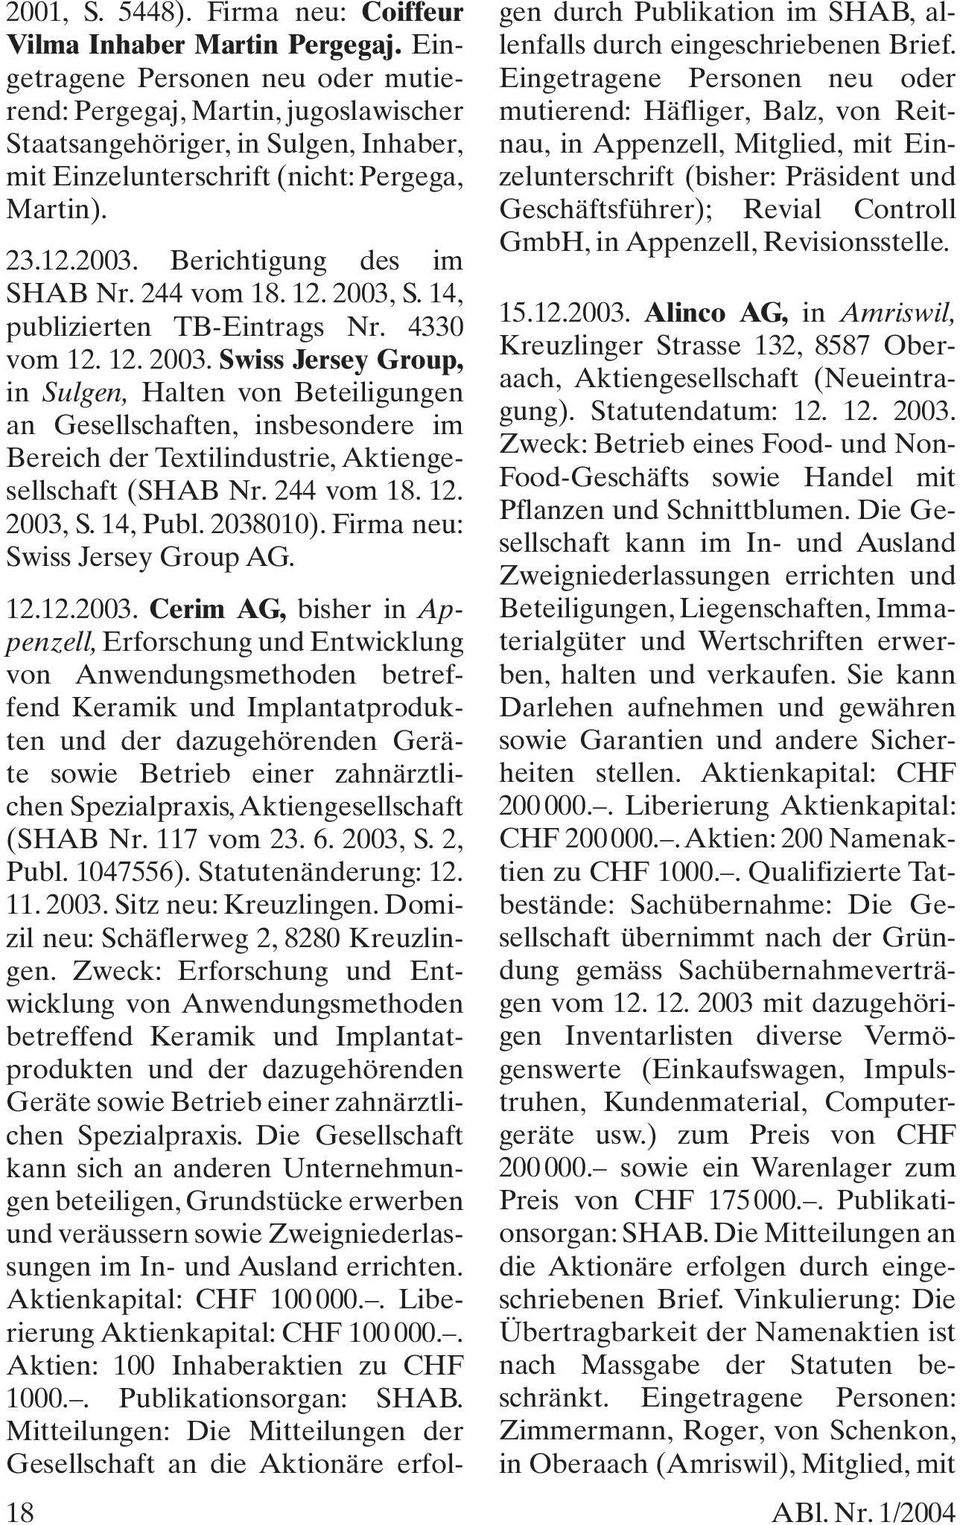 Berichtigung des im SHAB Nr. 244 vom 18. 12. 2003, S. 14, publizierten TB-Eintrags Nr. 4330 vom 12. 12. 2003. Swiss Jersey Group, in Sulgen, Halten von Beteiligungen an Gesellschaften, insbesondere im Bereich der Textilindustrie, Aktiengesellschaft (SHAB Nr.